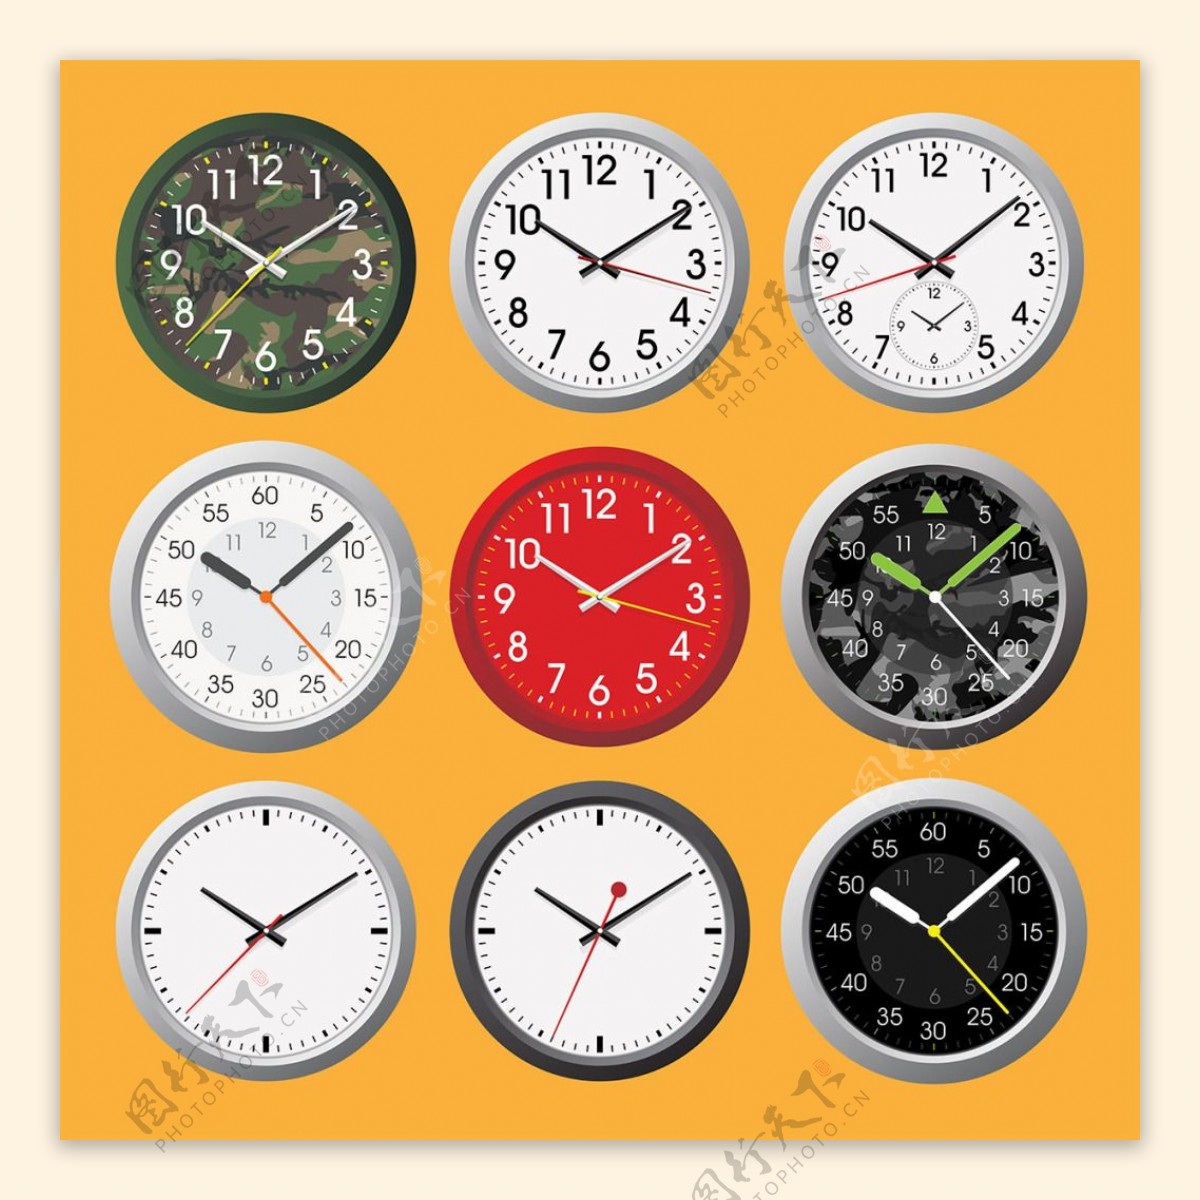 时钟钟表设计矢量素材